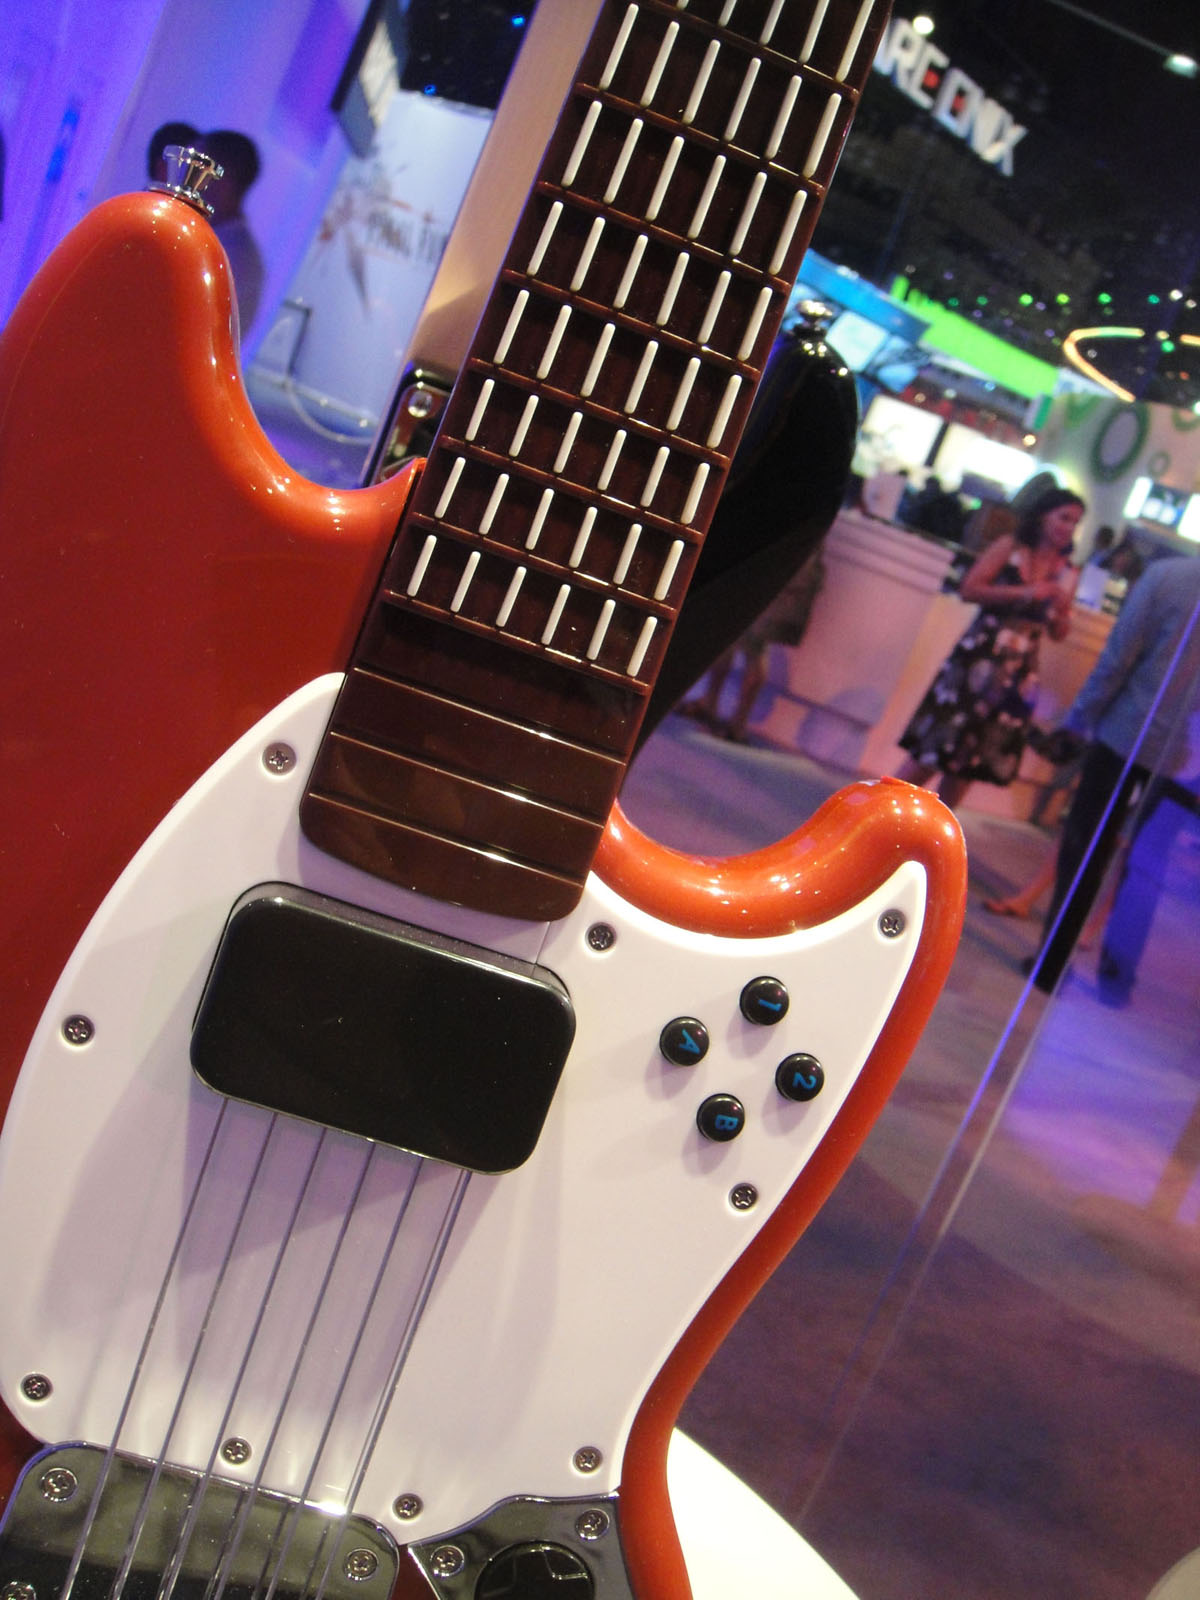 Fender_Mustang_Pro_Guitar_Controller_%28body%29_for_Rock_Band_3_%40_E3_Expo_2010.jpg